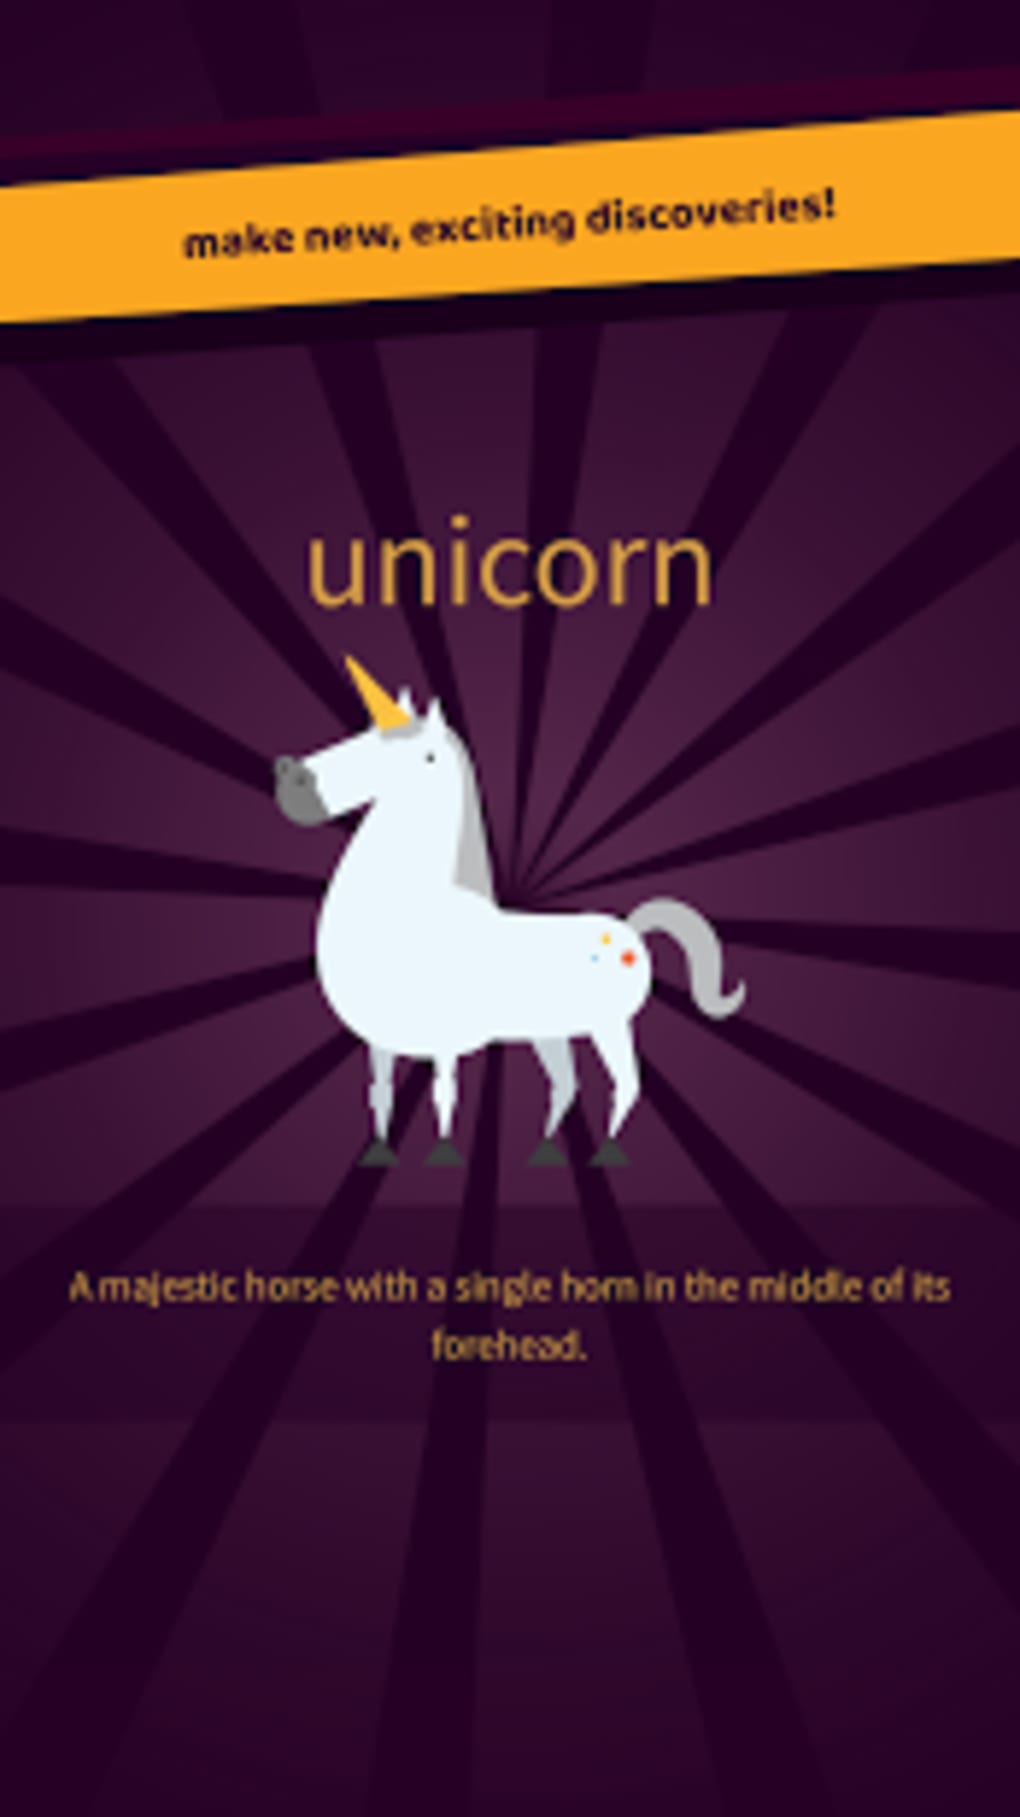 unicornio - Little Alchemy Combinaciones